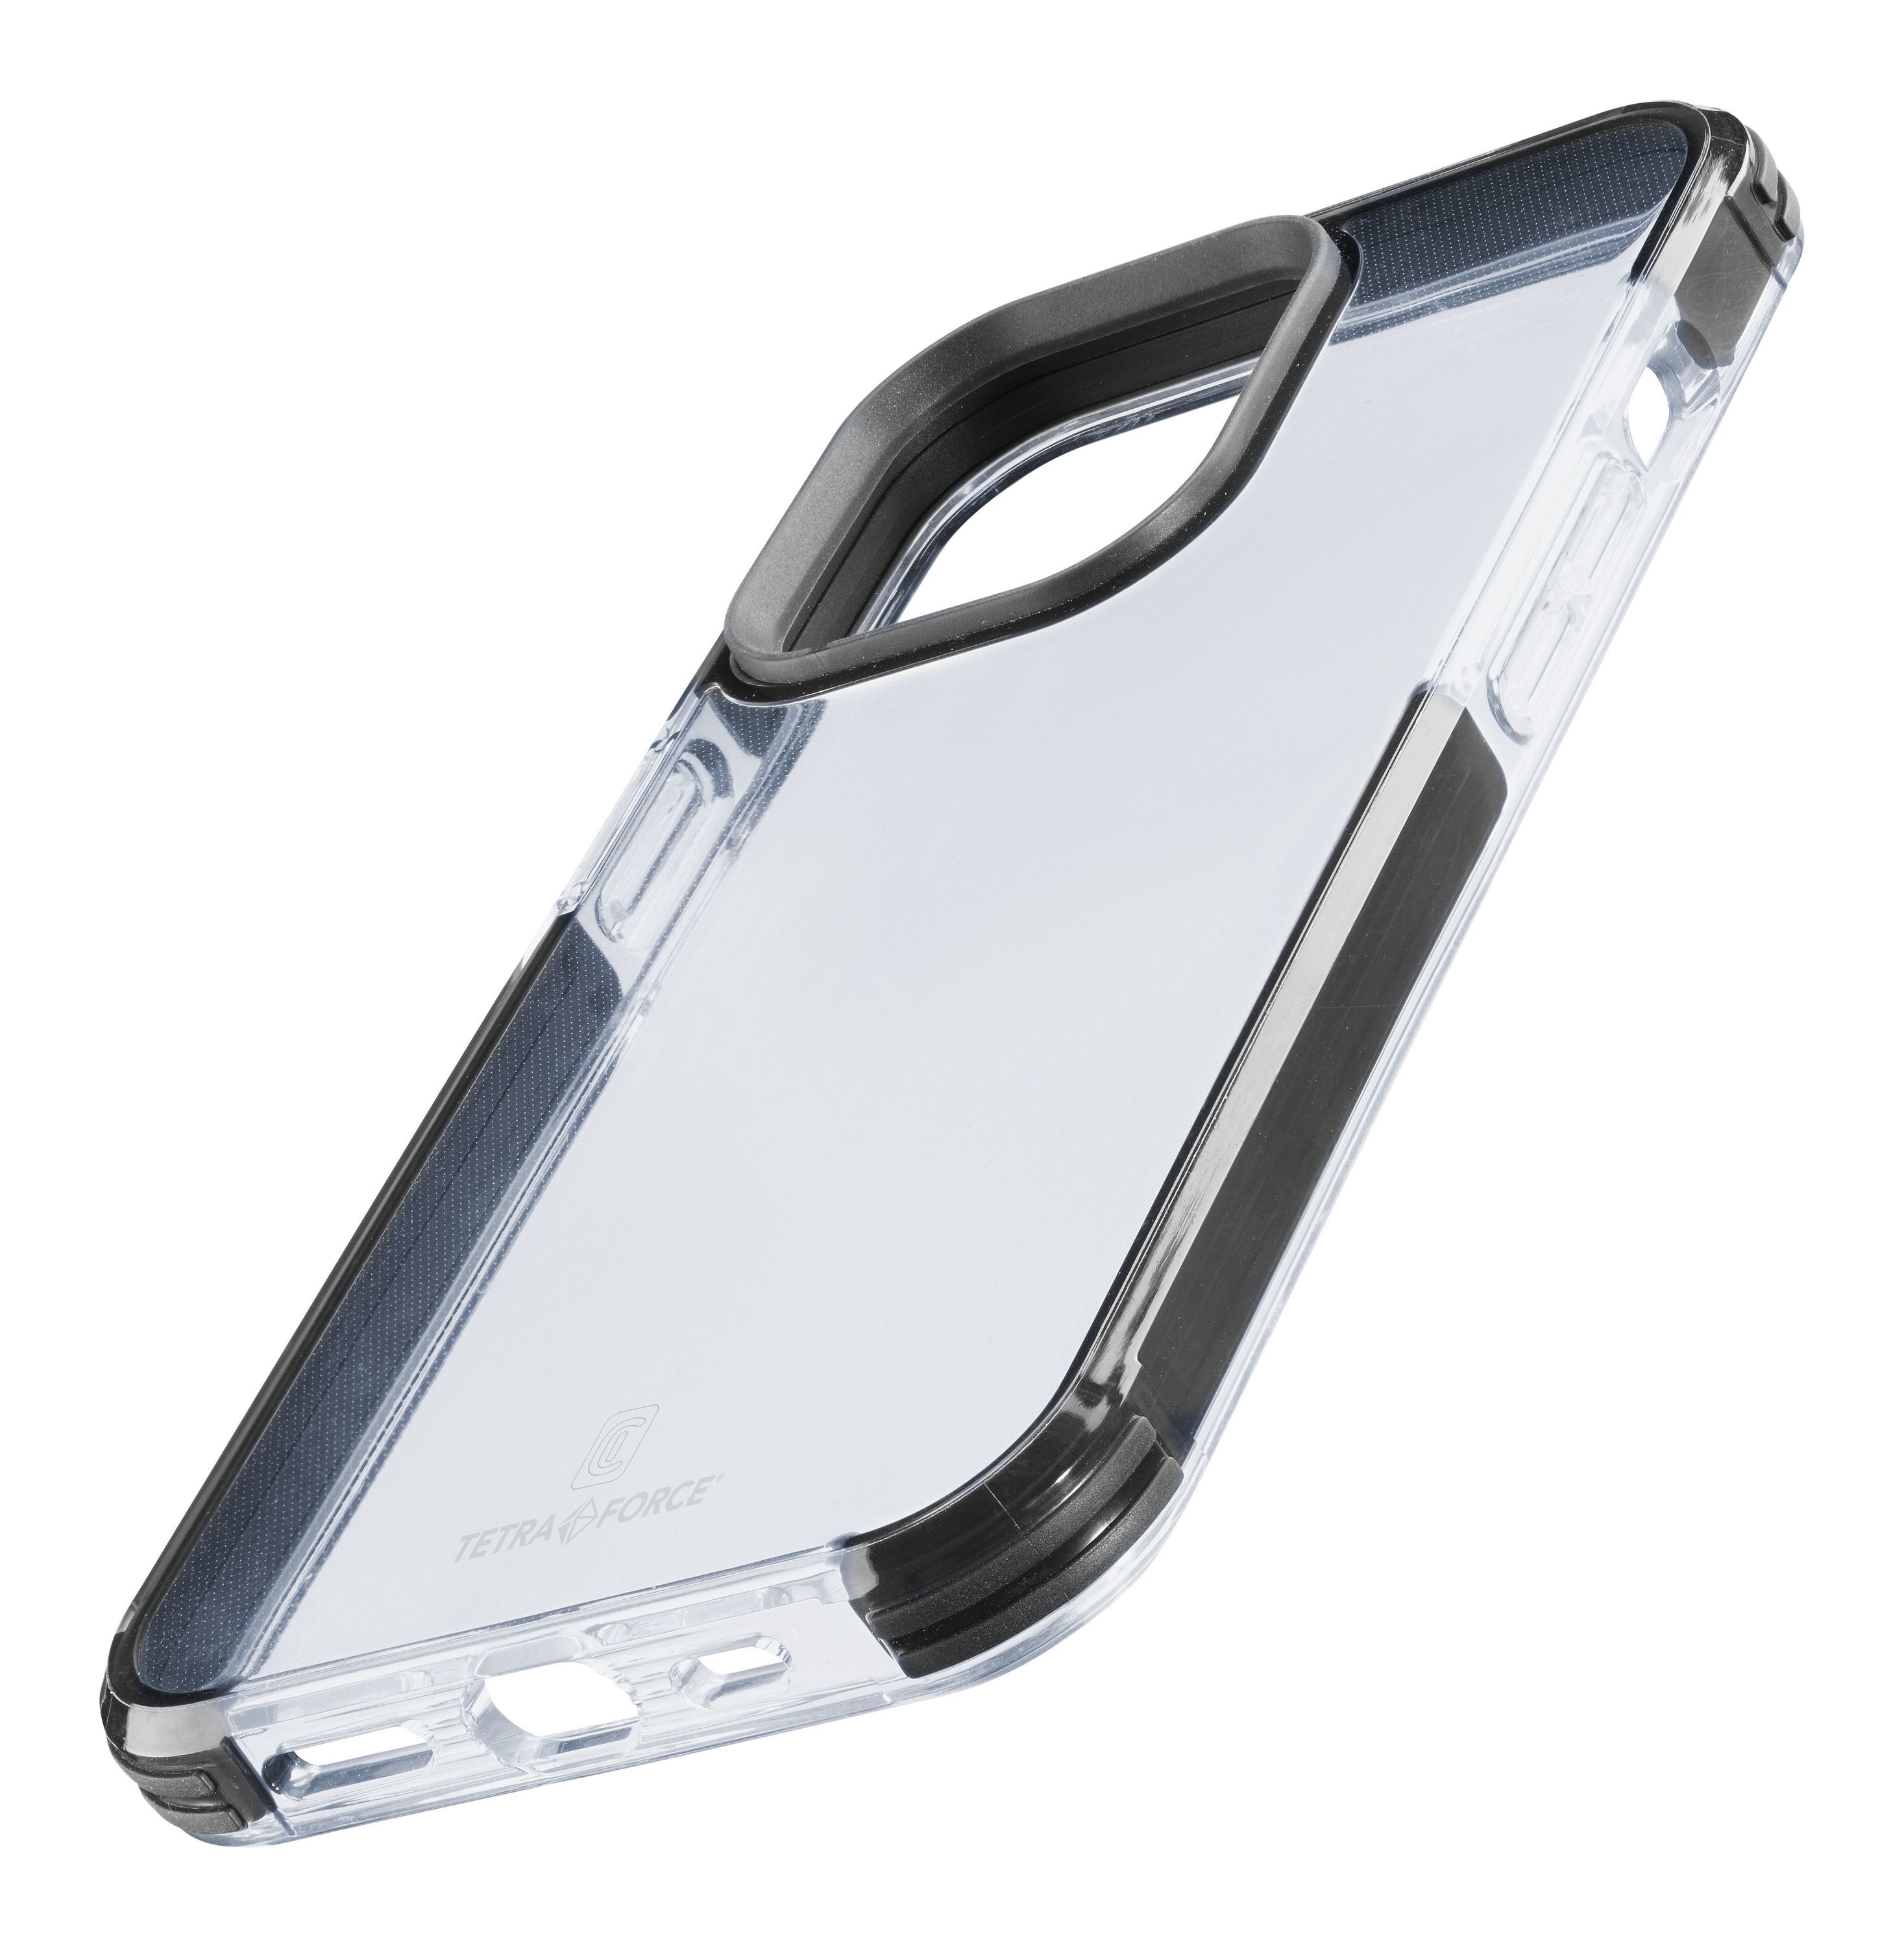 Ultra ochranné pouzdro Tetra Force Shock-Twist pro Apple iPhone 13, 2 stupně ochrany, transparentní